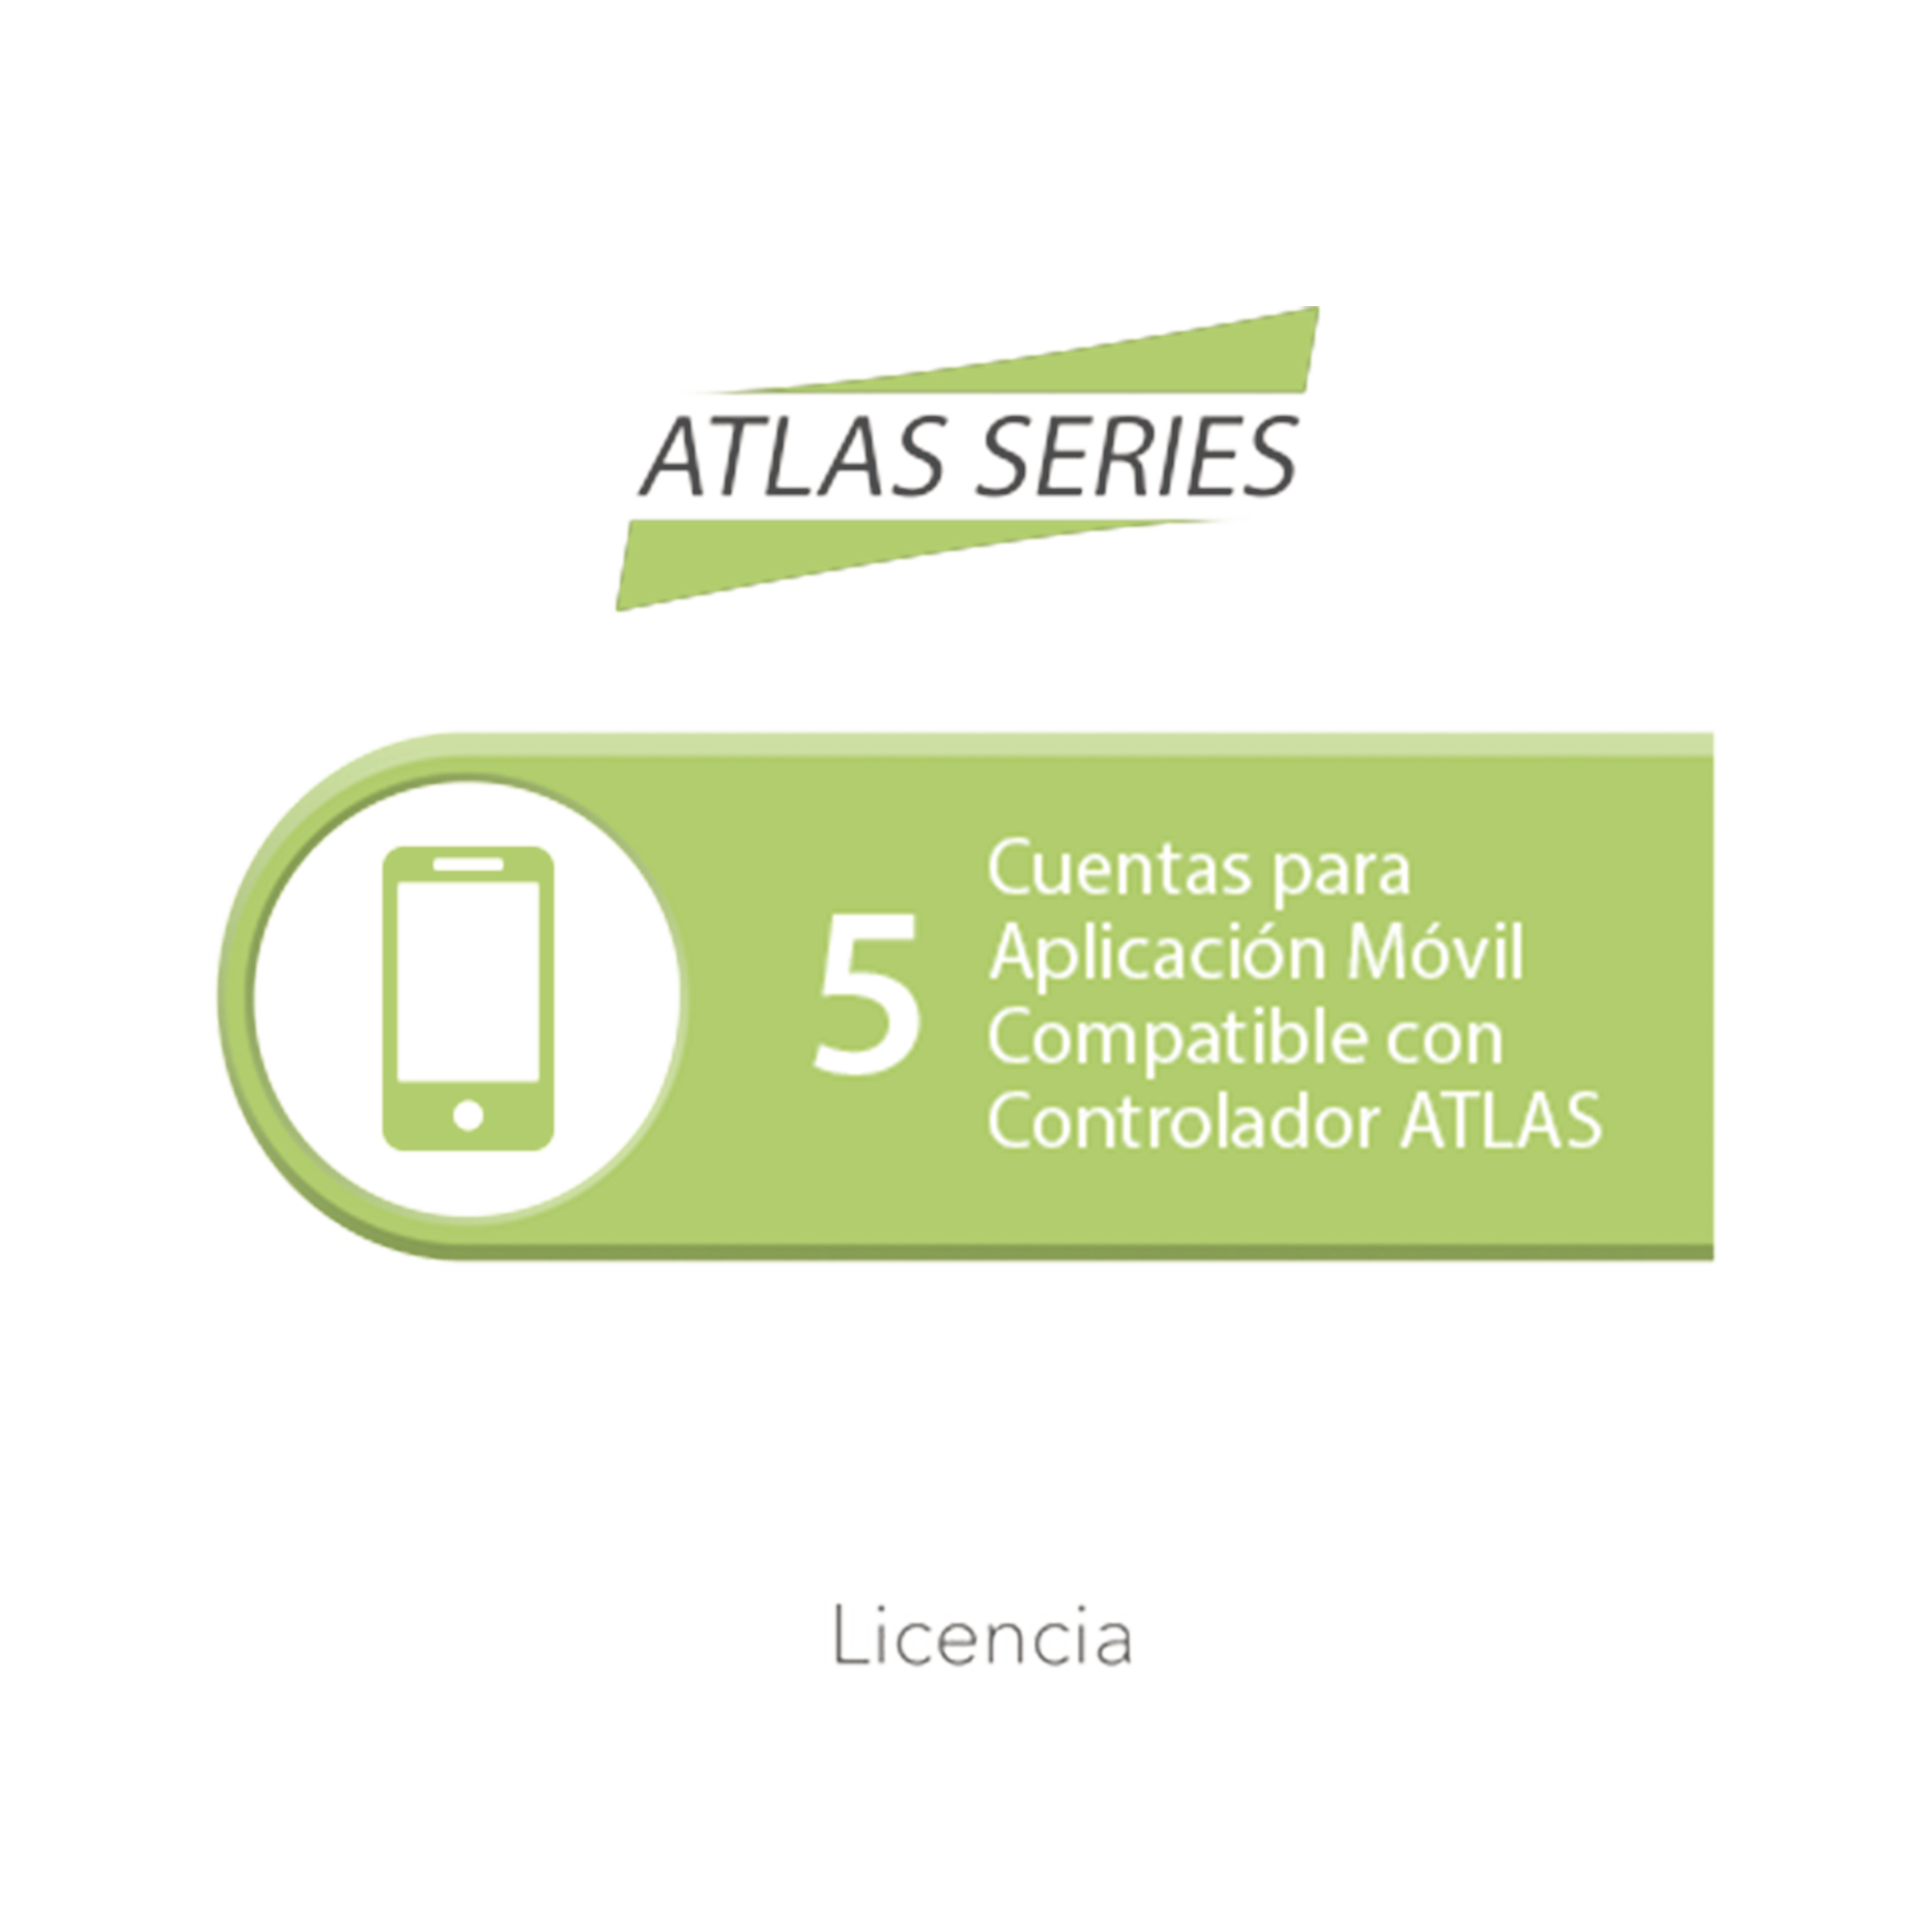 Licencia de 5 cuentas para aplicación Móvil compatible con controlador ATLAS